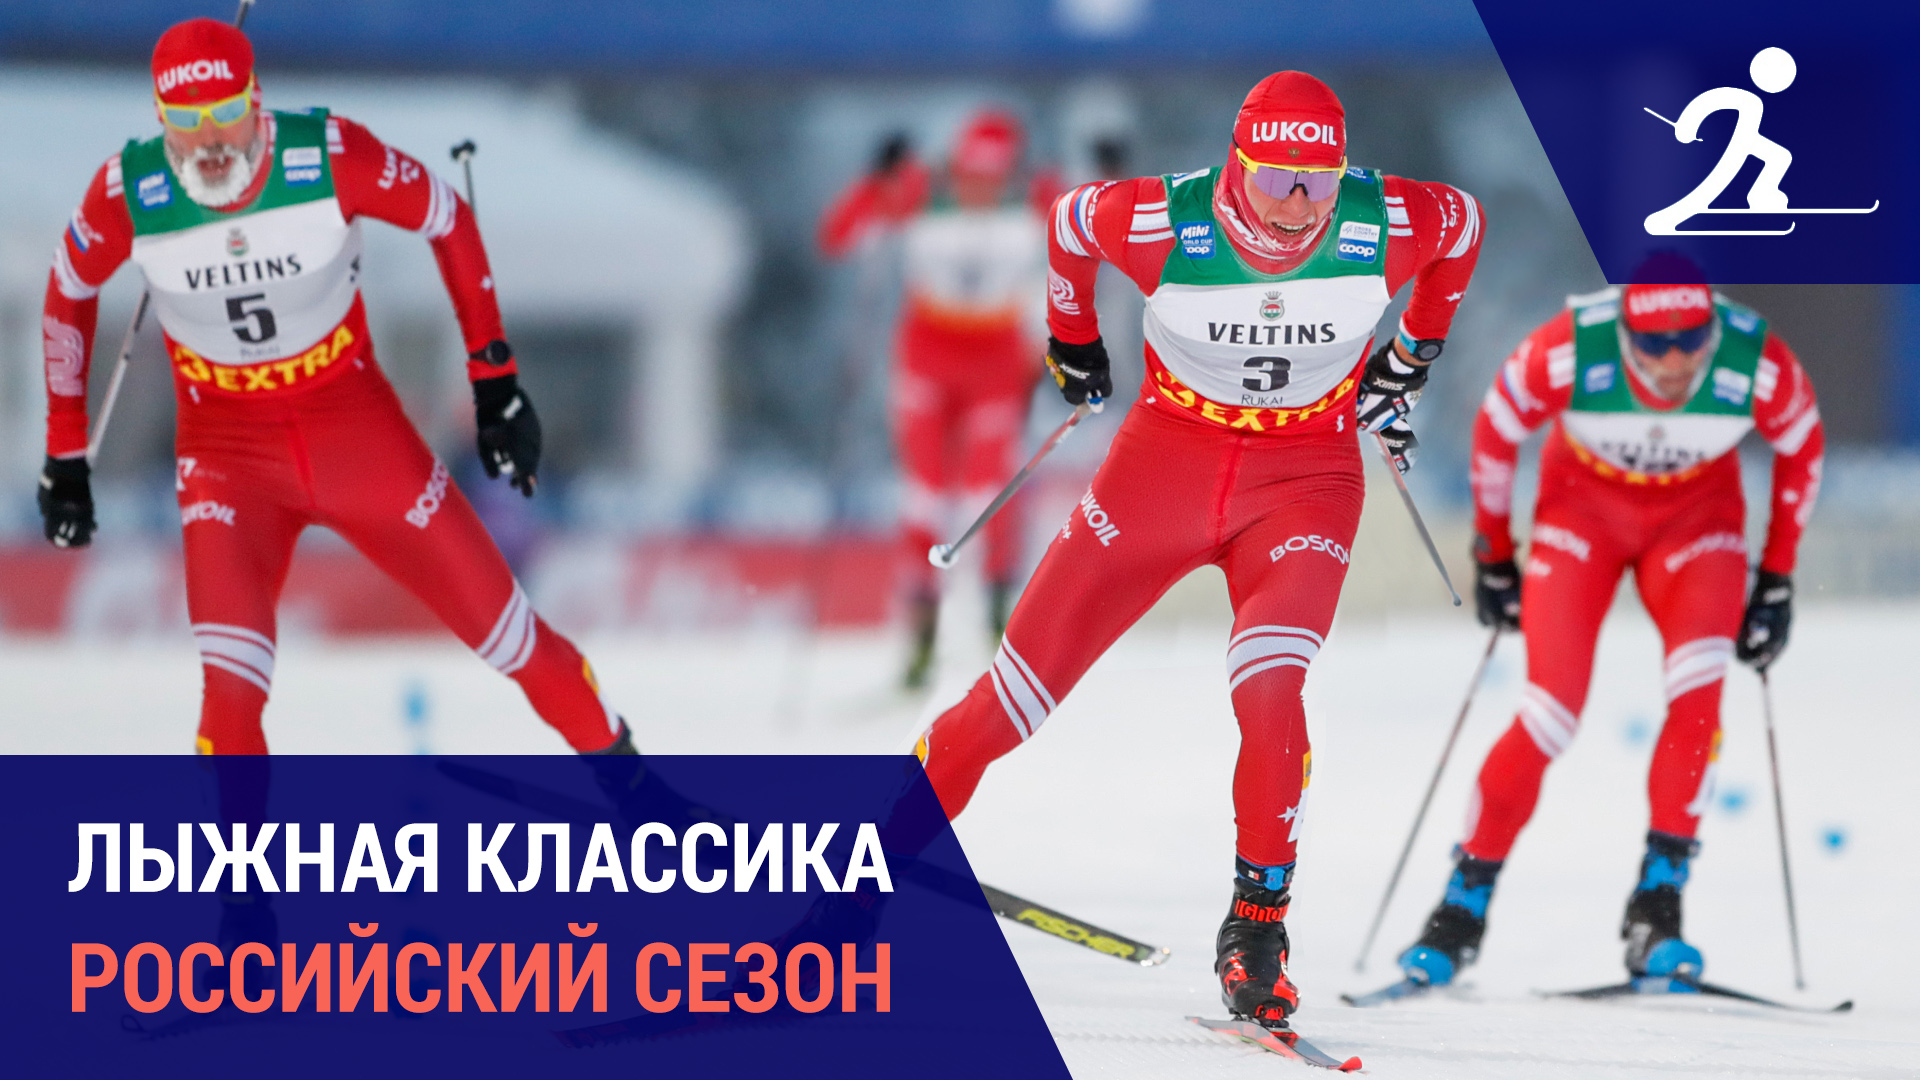 Лыжные гонки. Российский сезон в условиях отстранения